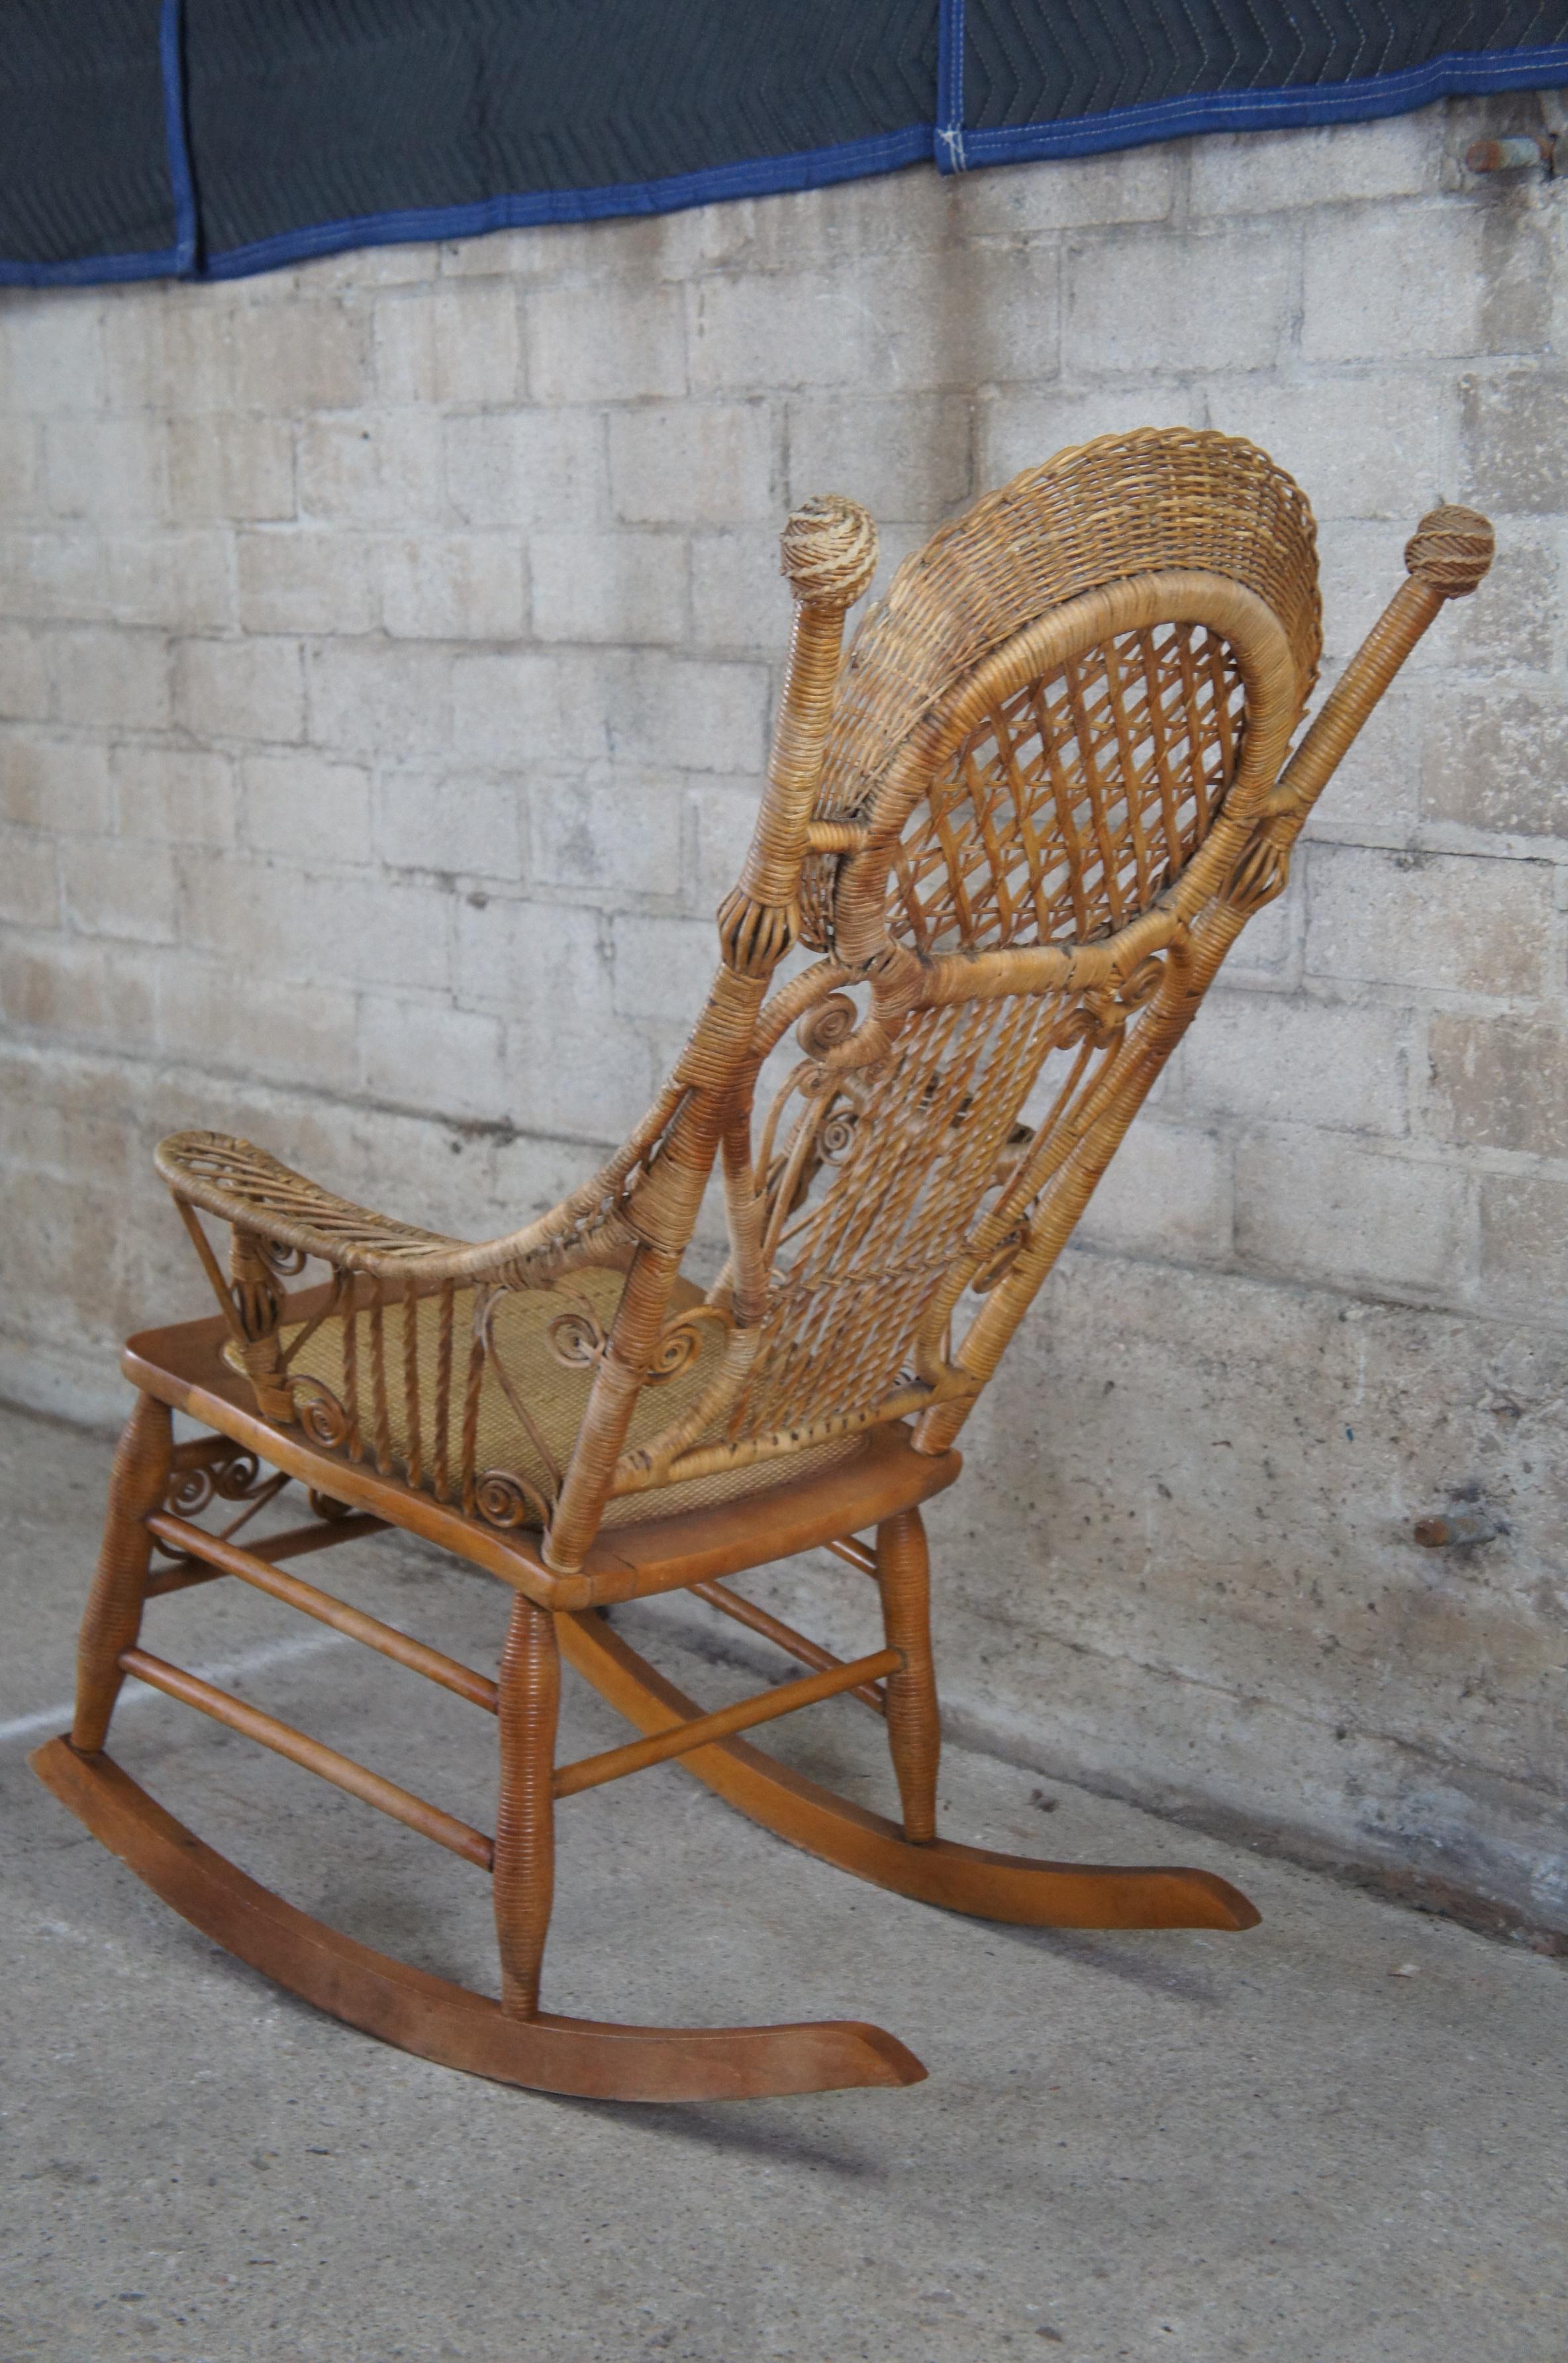 Antique Child's Wicker Rocking Chair Circa 1880's Victorian Rocker